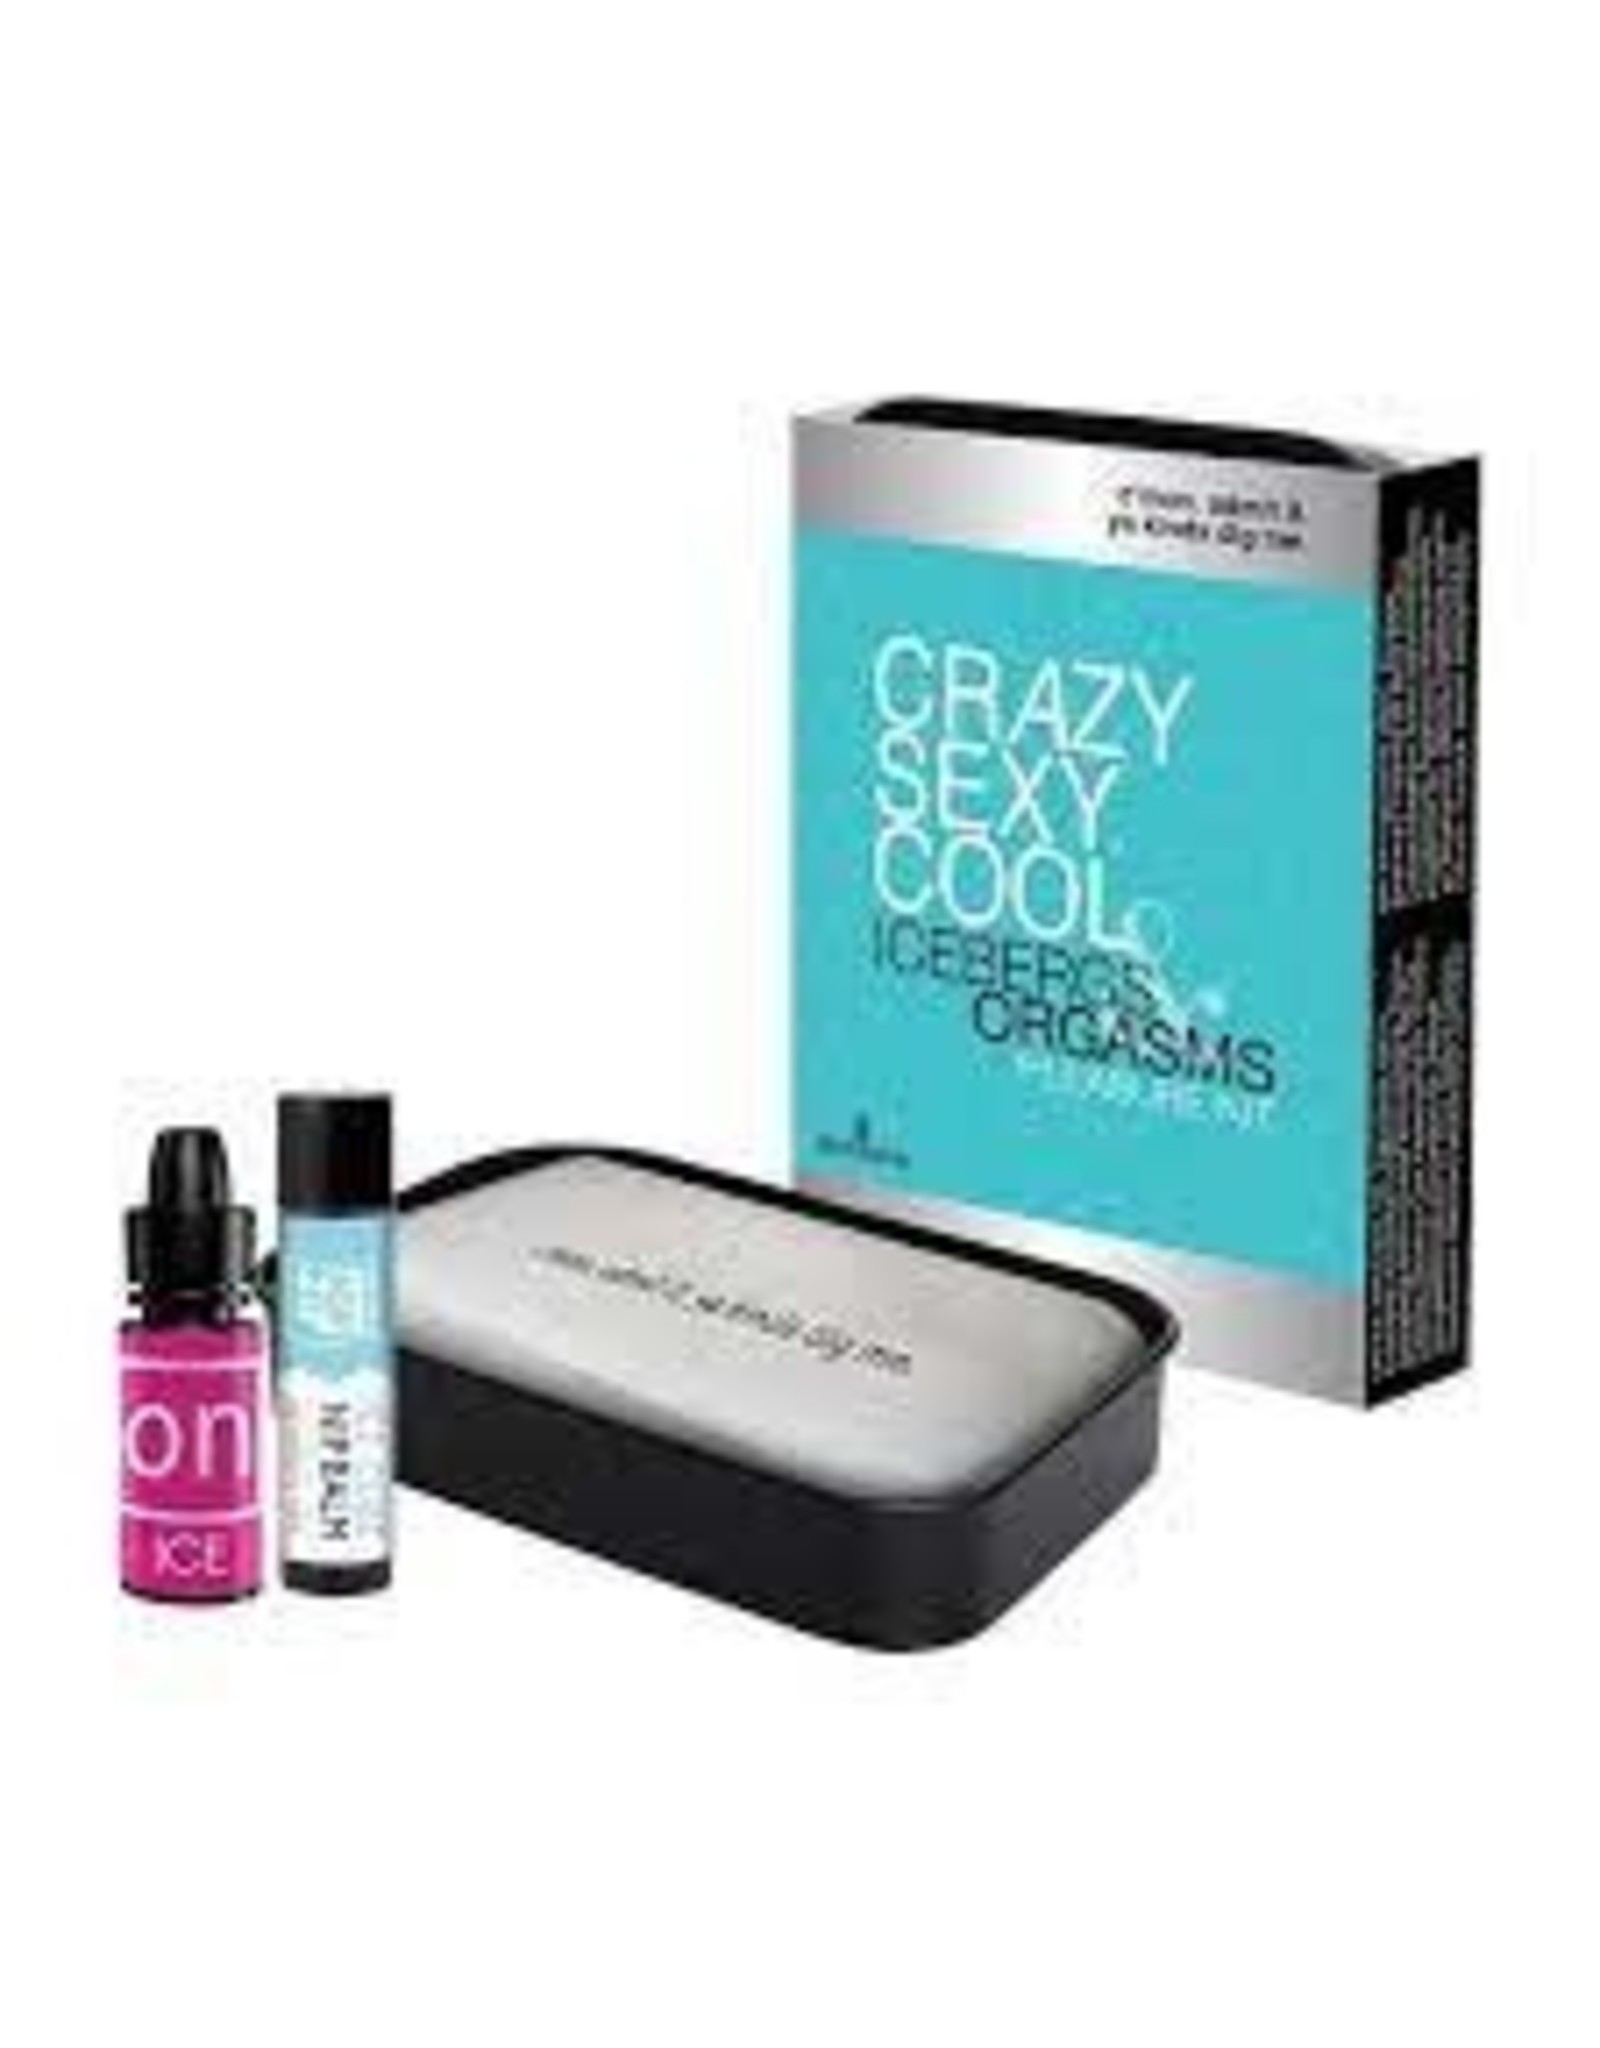 Sensuva Sensuva - Crazy Sexy Cool Icebergs Orgasms Pleasure Kit